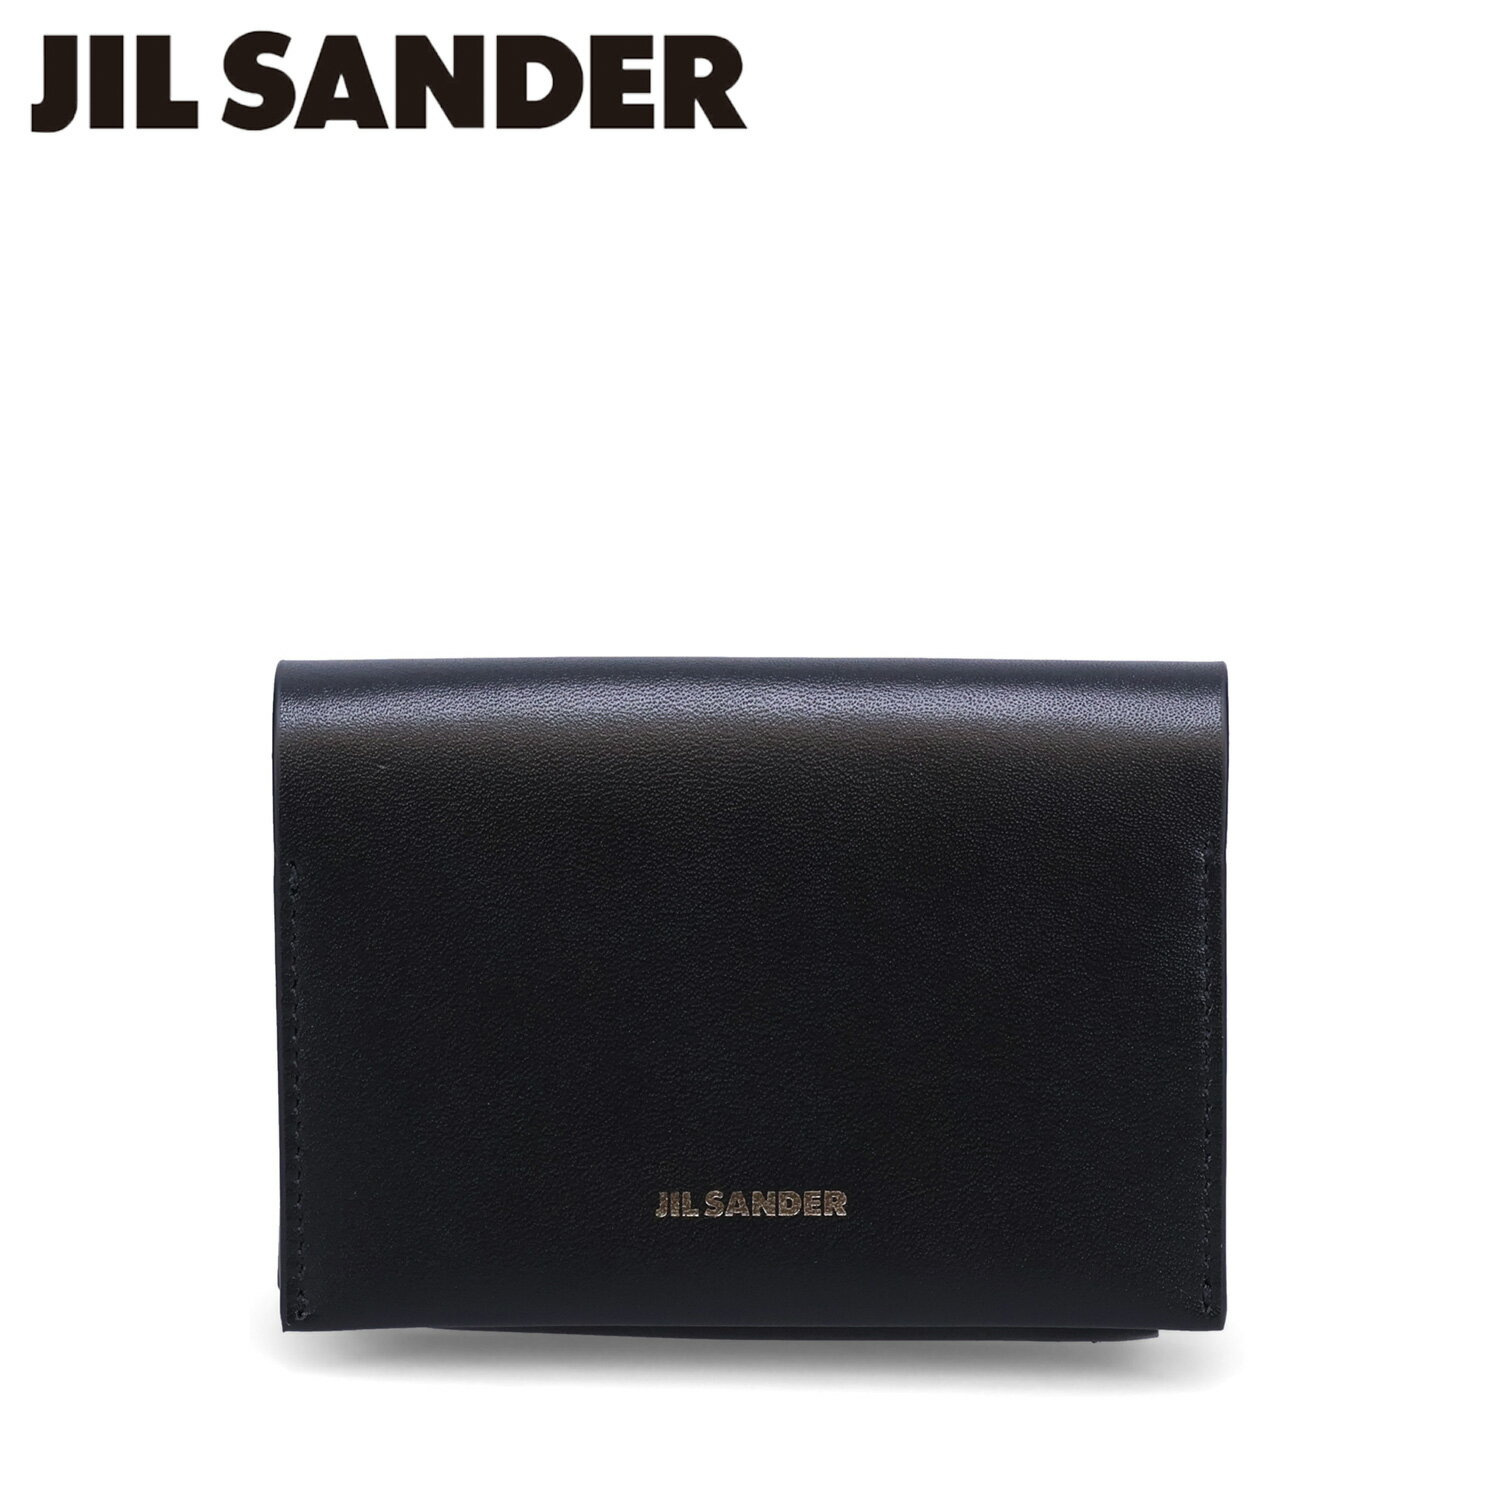 ジルサンダー JIL SANDER カードケース 名刺入れ 定期入れ ID メンズ スリム 本革 ORIGAMI CARD HOLDER ブラック 黒 J25UI0006